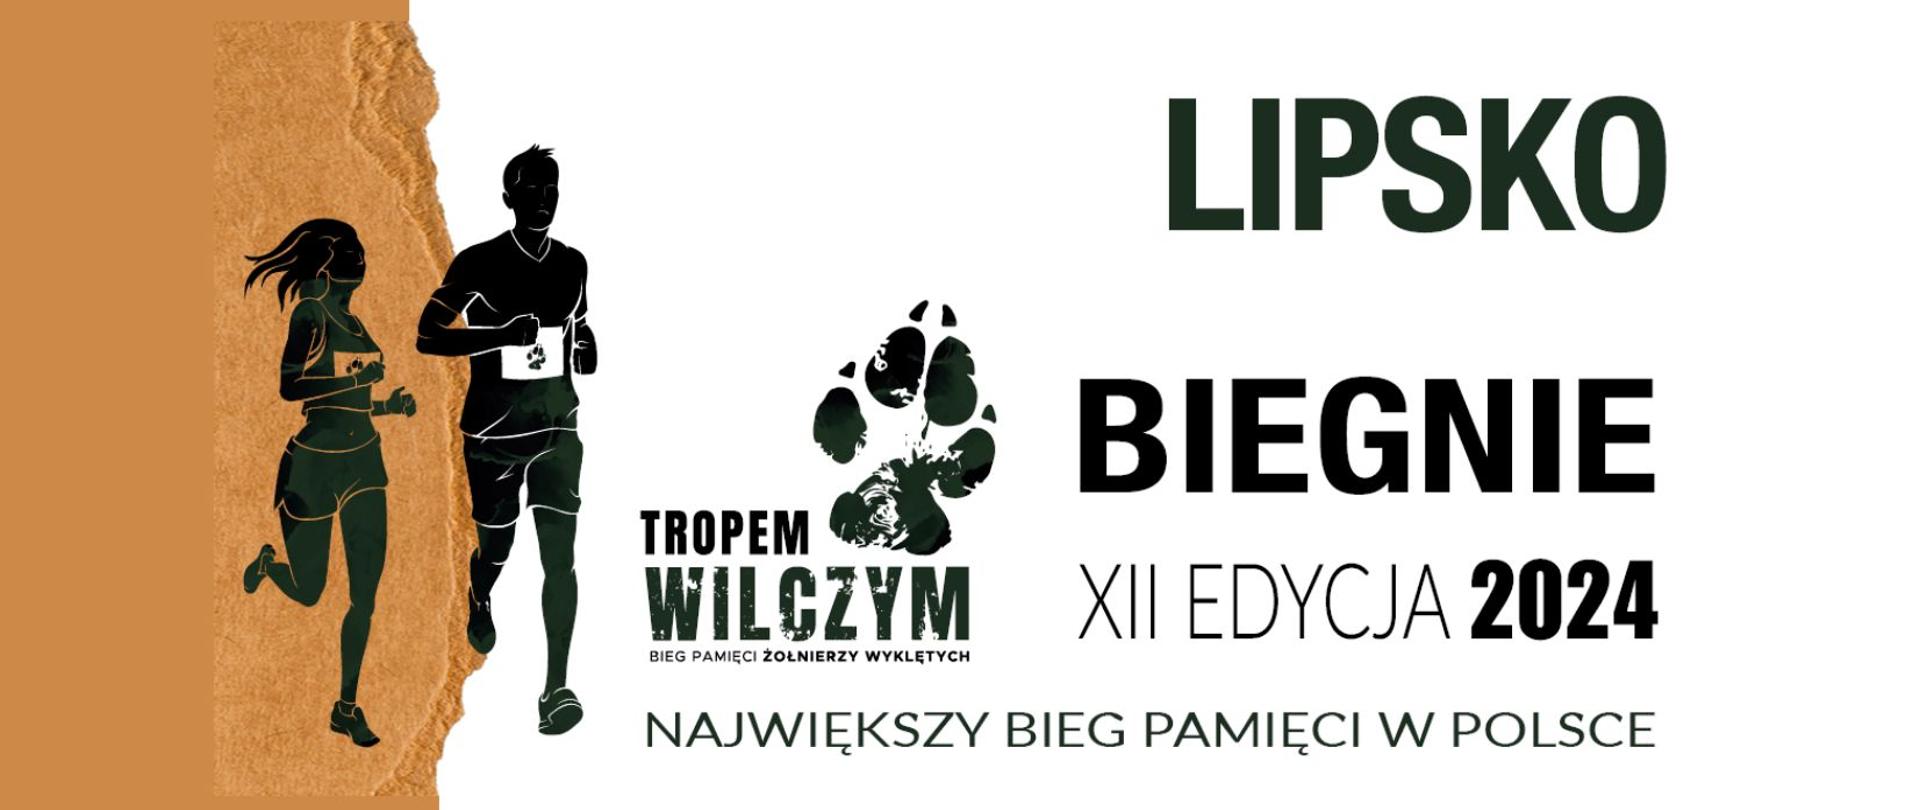 Napis - Lipsko biegnie - XII Edycja 2024 - Największy bieg pamięci w Polsce. W grafice znajduje się logotyp biegu Tropem Wilczym oraz grafiki biegnących sylwetek dwójki ludzi.